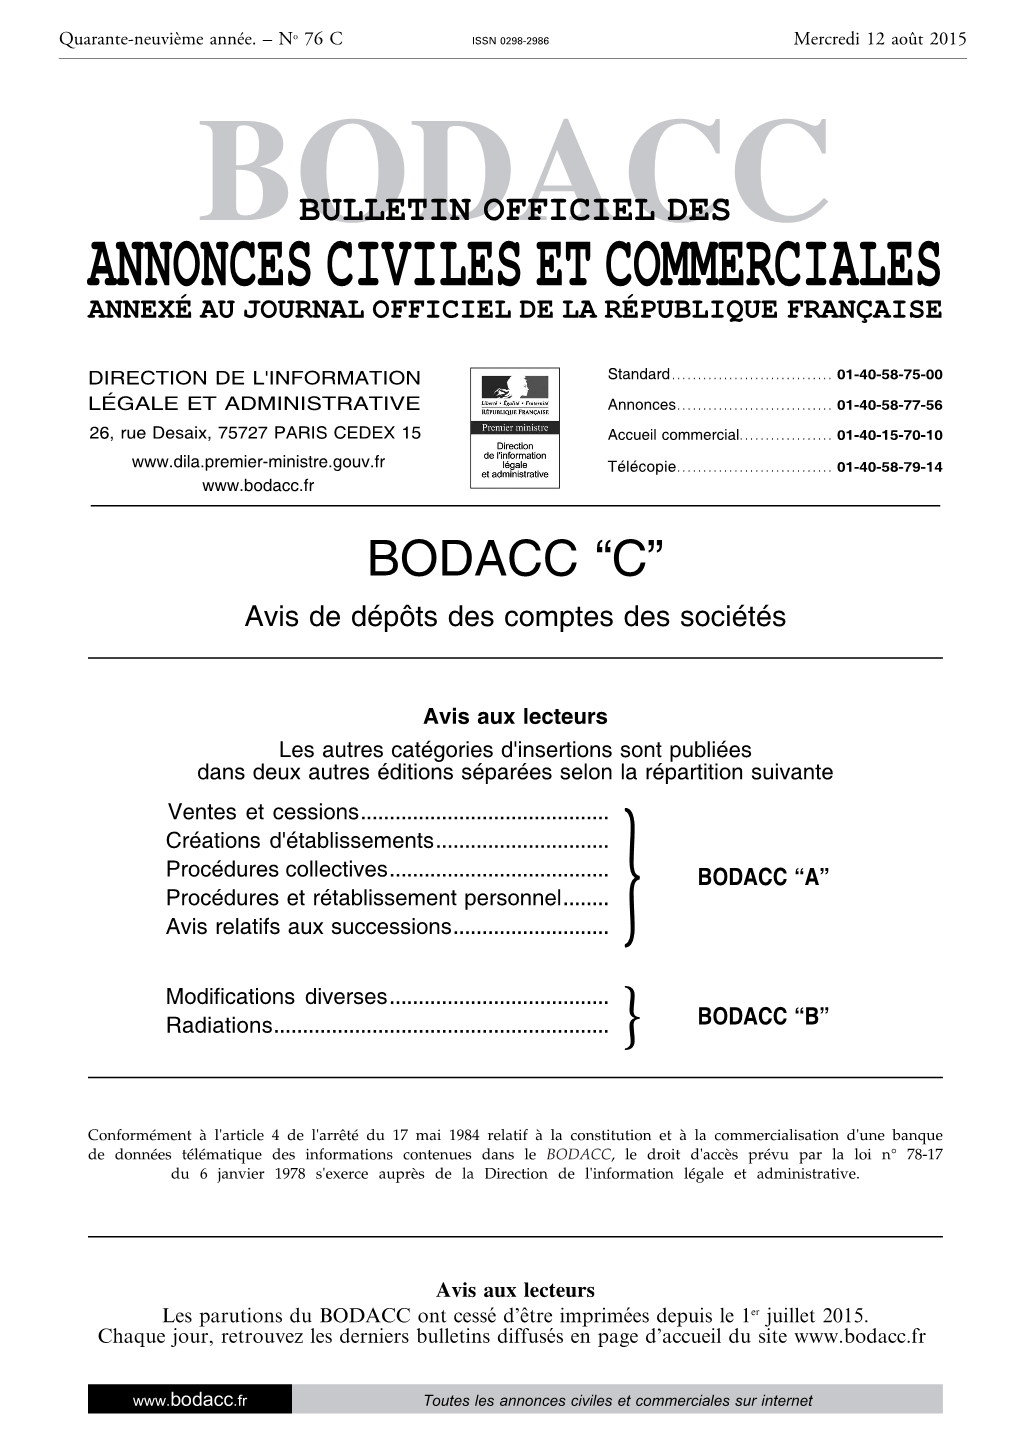 BODACC C Compo 20150076 1..160